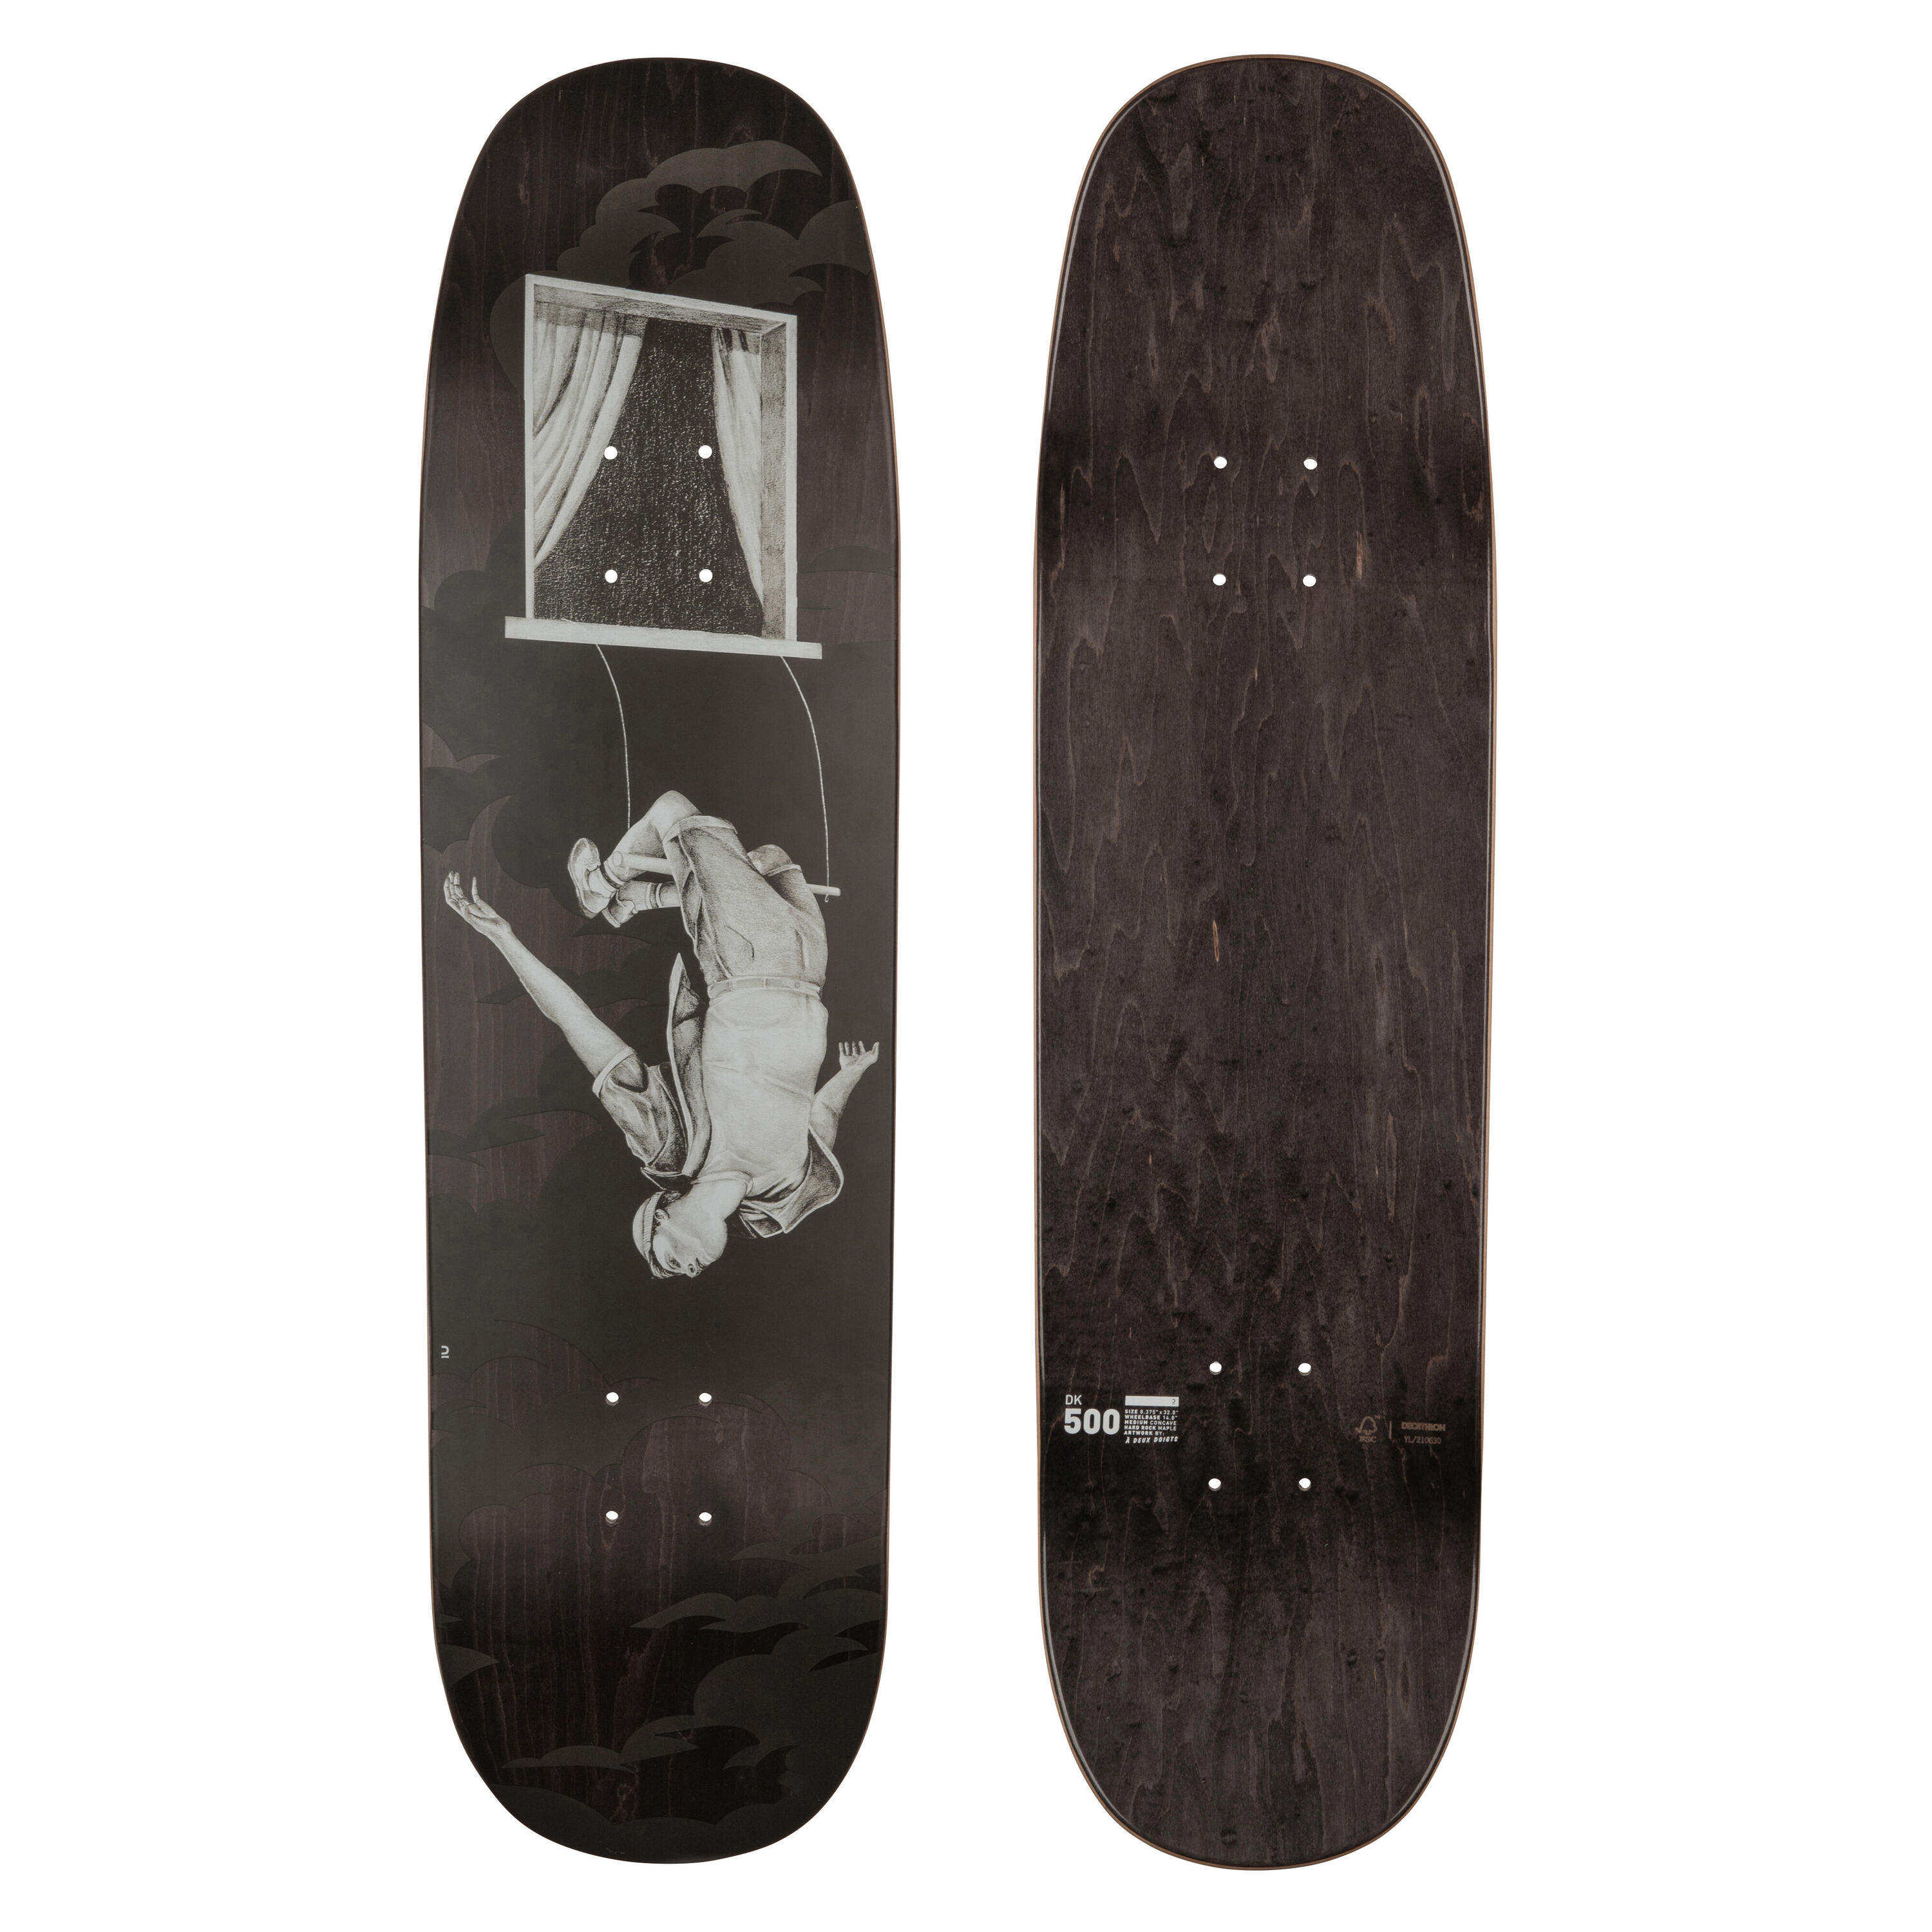 OXELO 8.375" Maple Shaped Skateboard Deck DK500